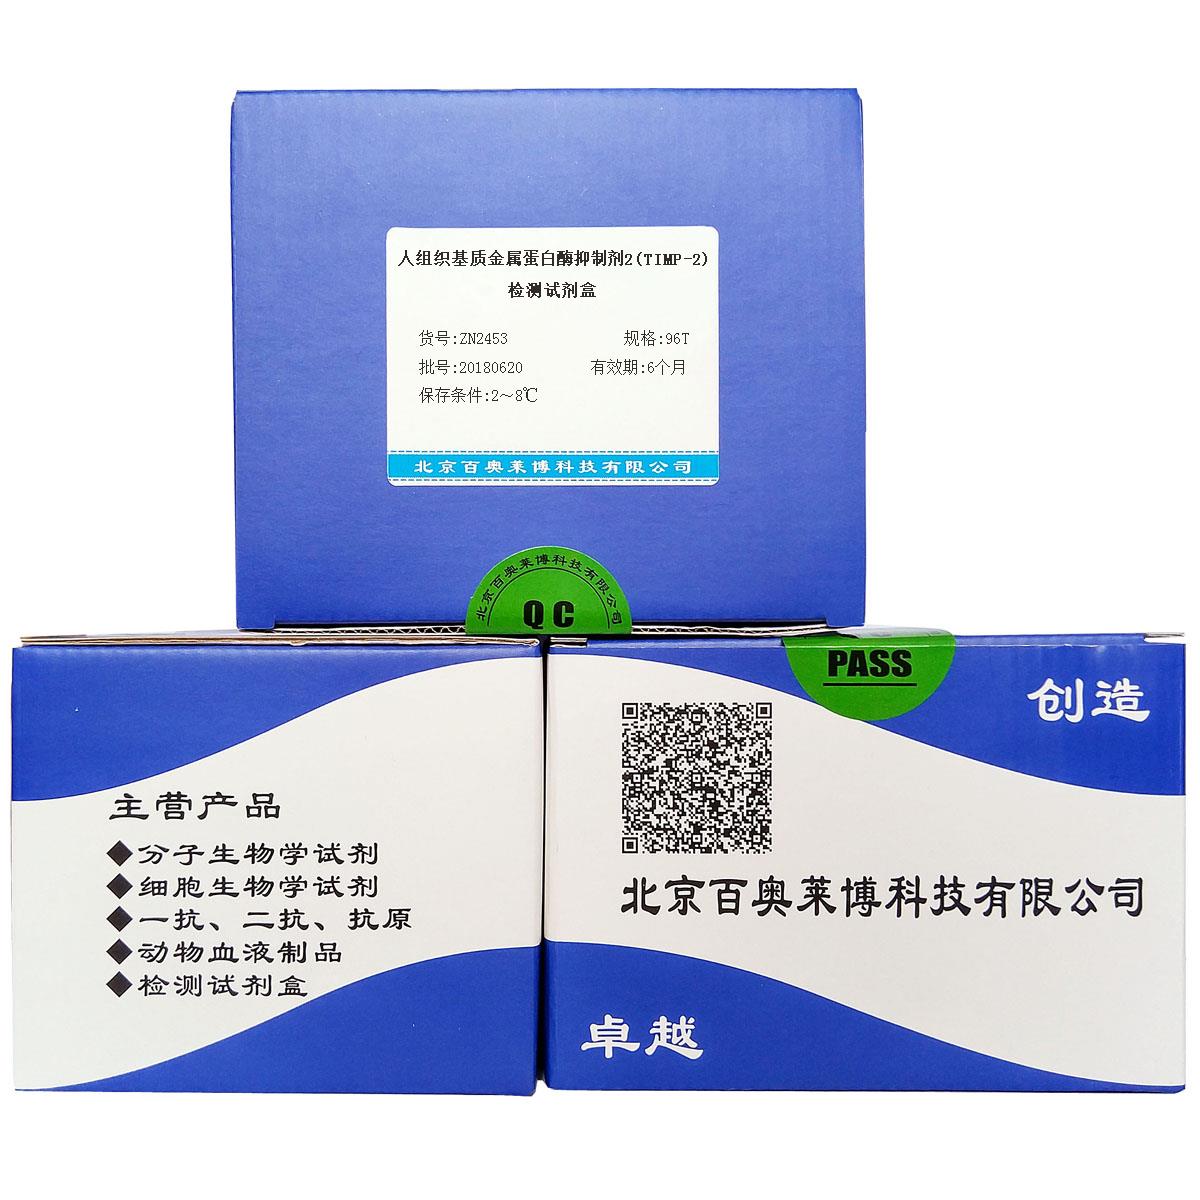 北京促销人组织基质金属蛋白酶抑制剂2(TIMP-2)检测试剂盒价格